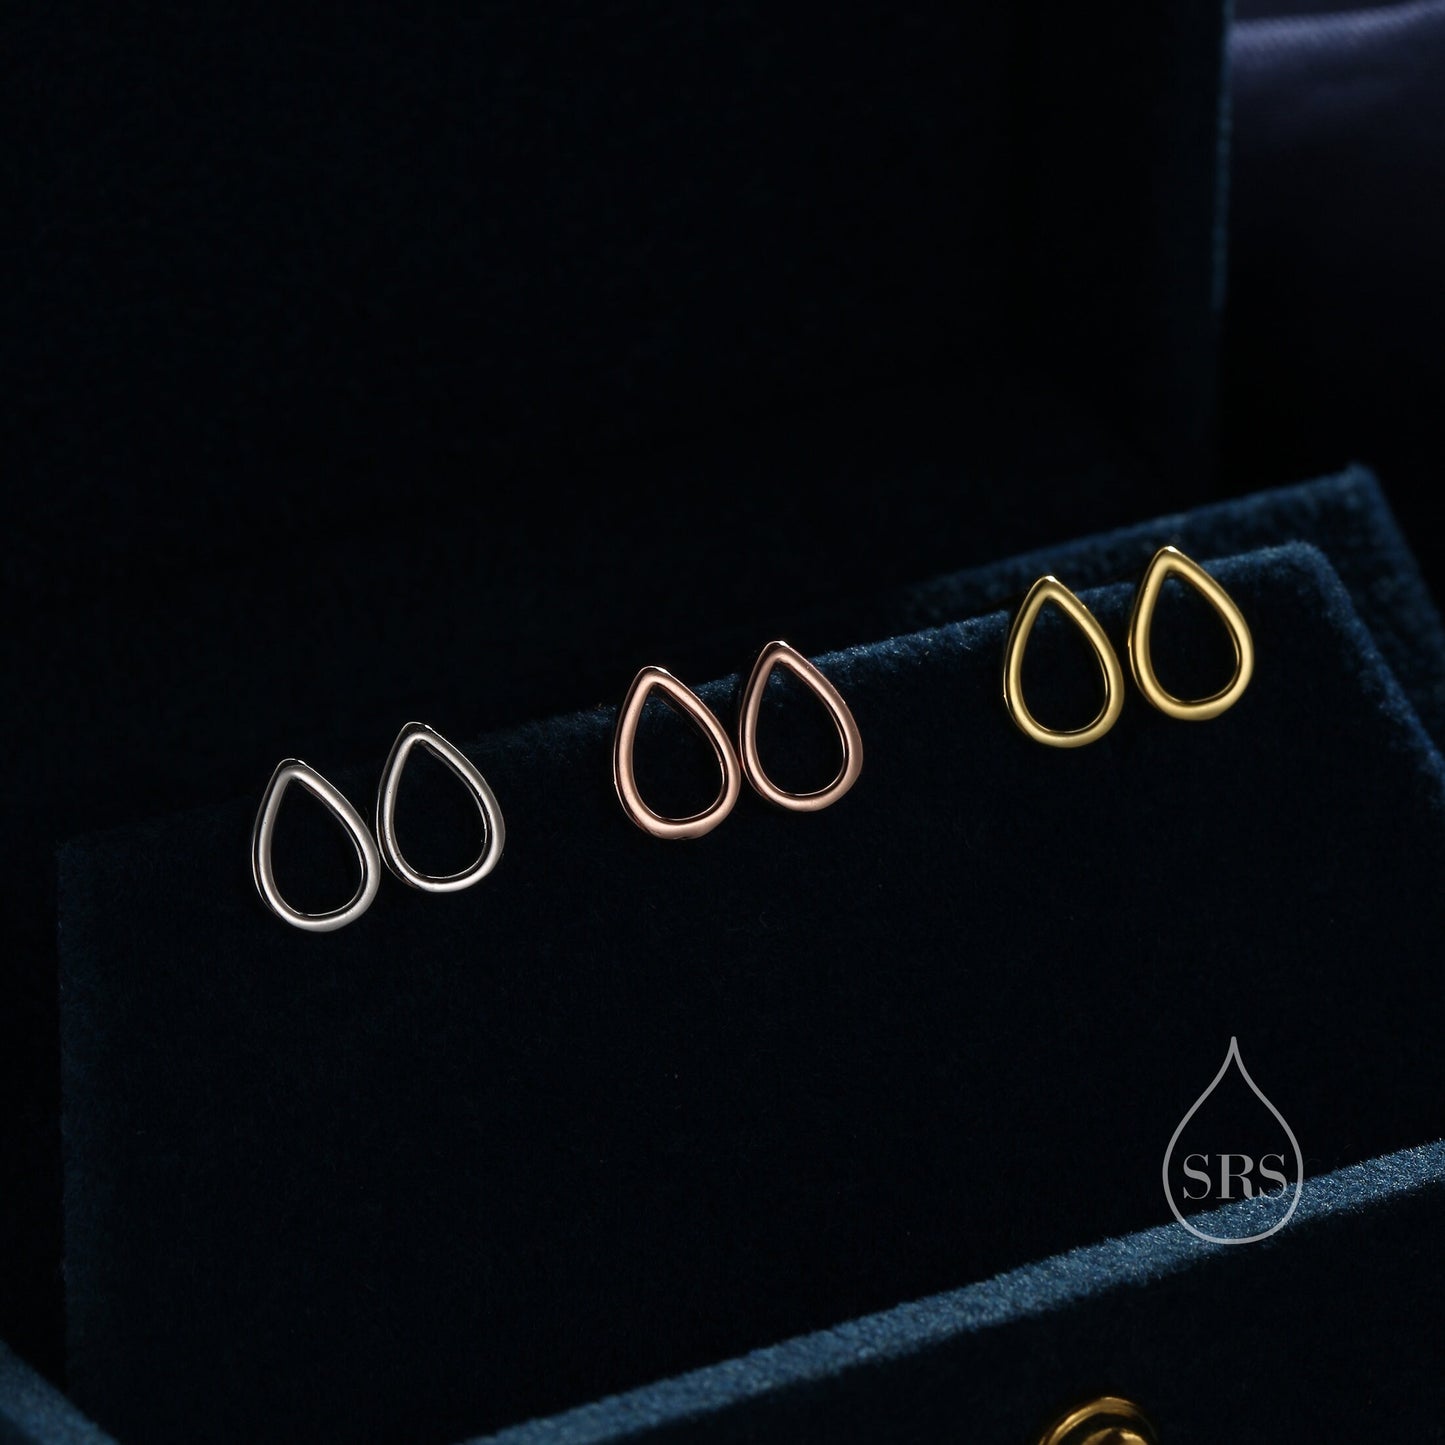 Sterling Silver Minimalist Open Droplet Stud Earrings in Sterling Silver - Minimalist Geometric Design C59